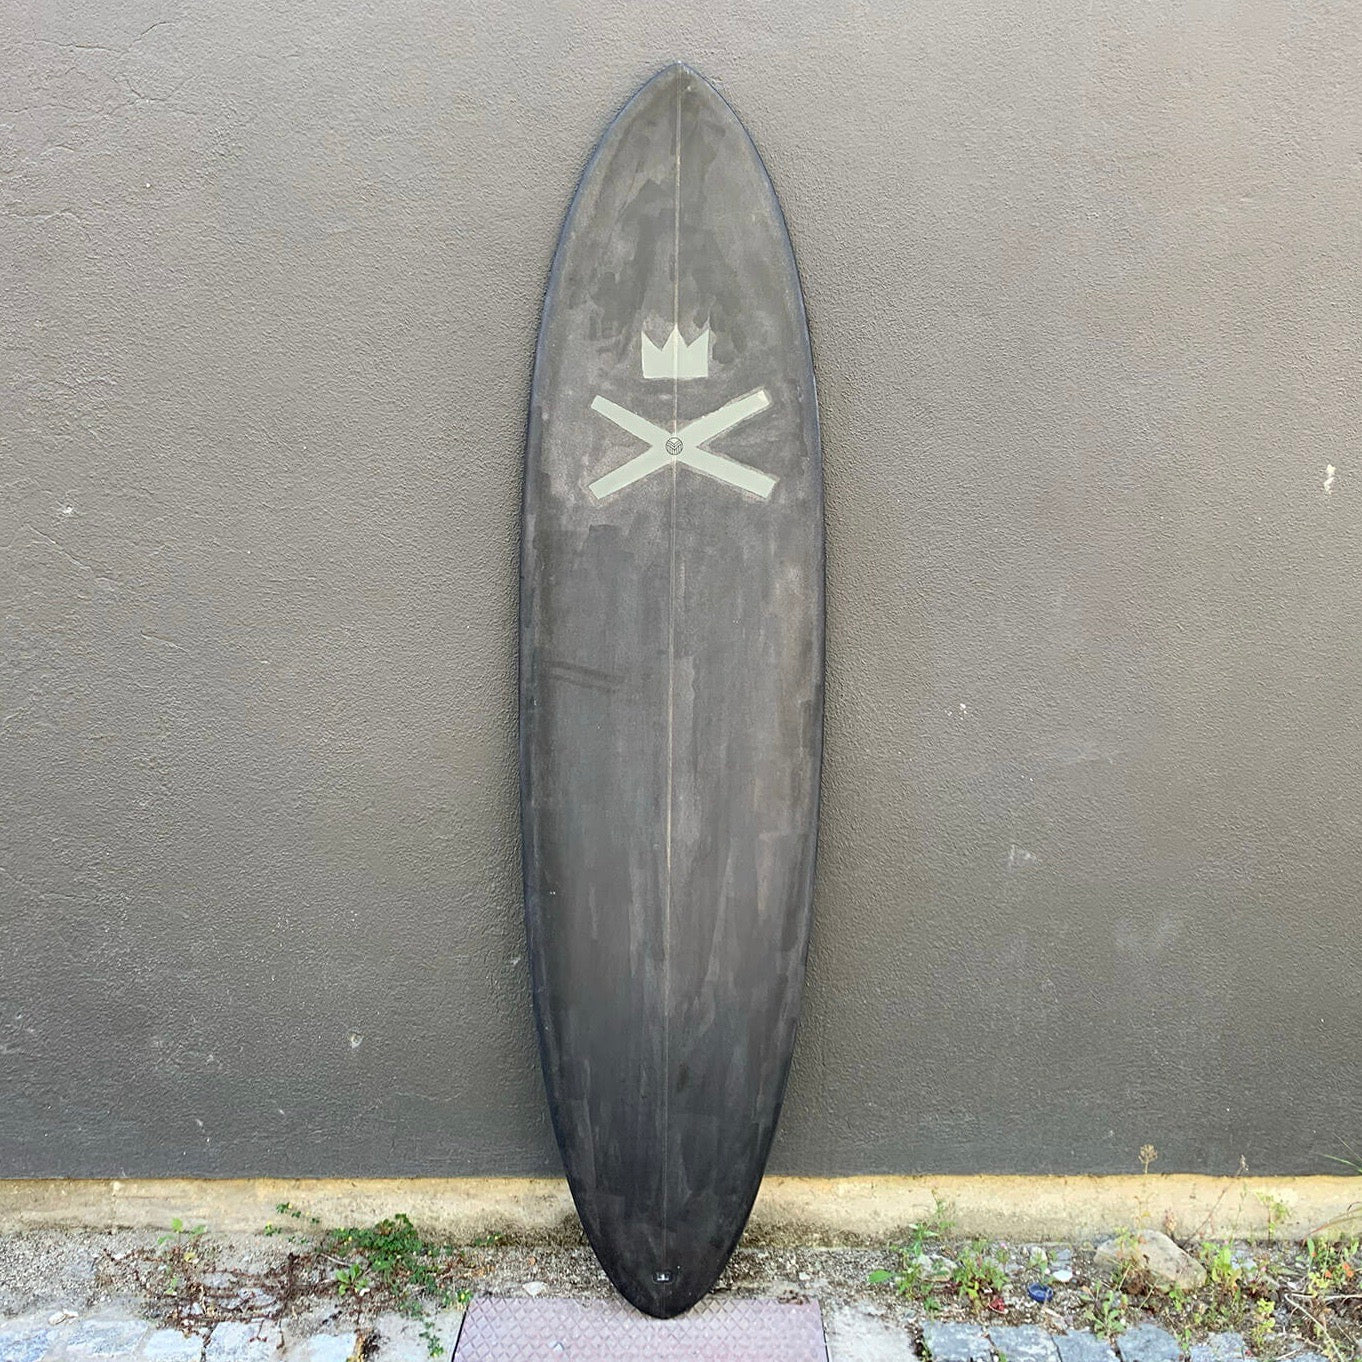 Surfboard 7'0’’ LISBON CROOKS X REBEL FIN - REBEL FIN CO.